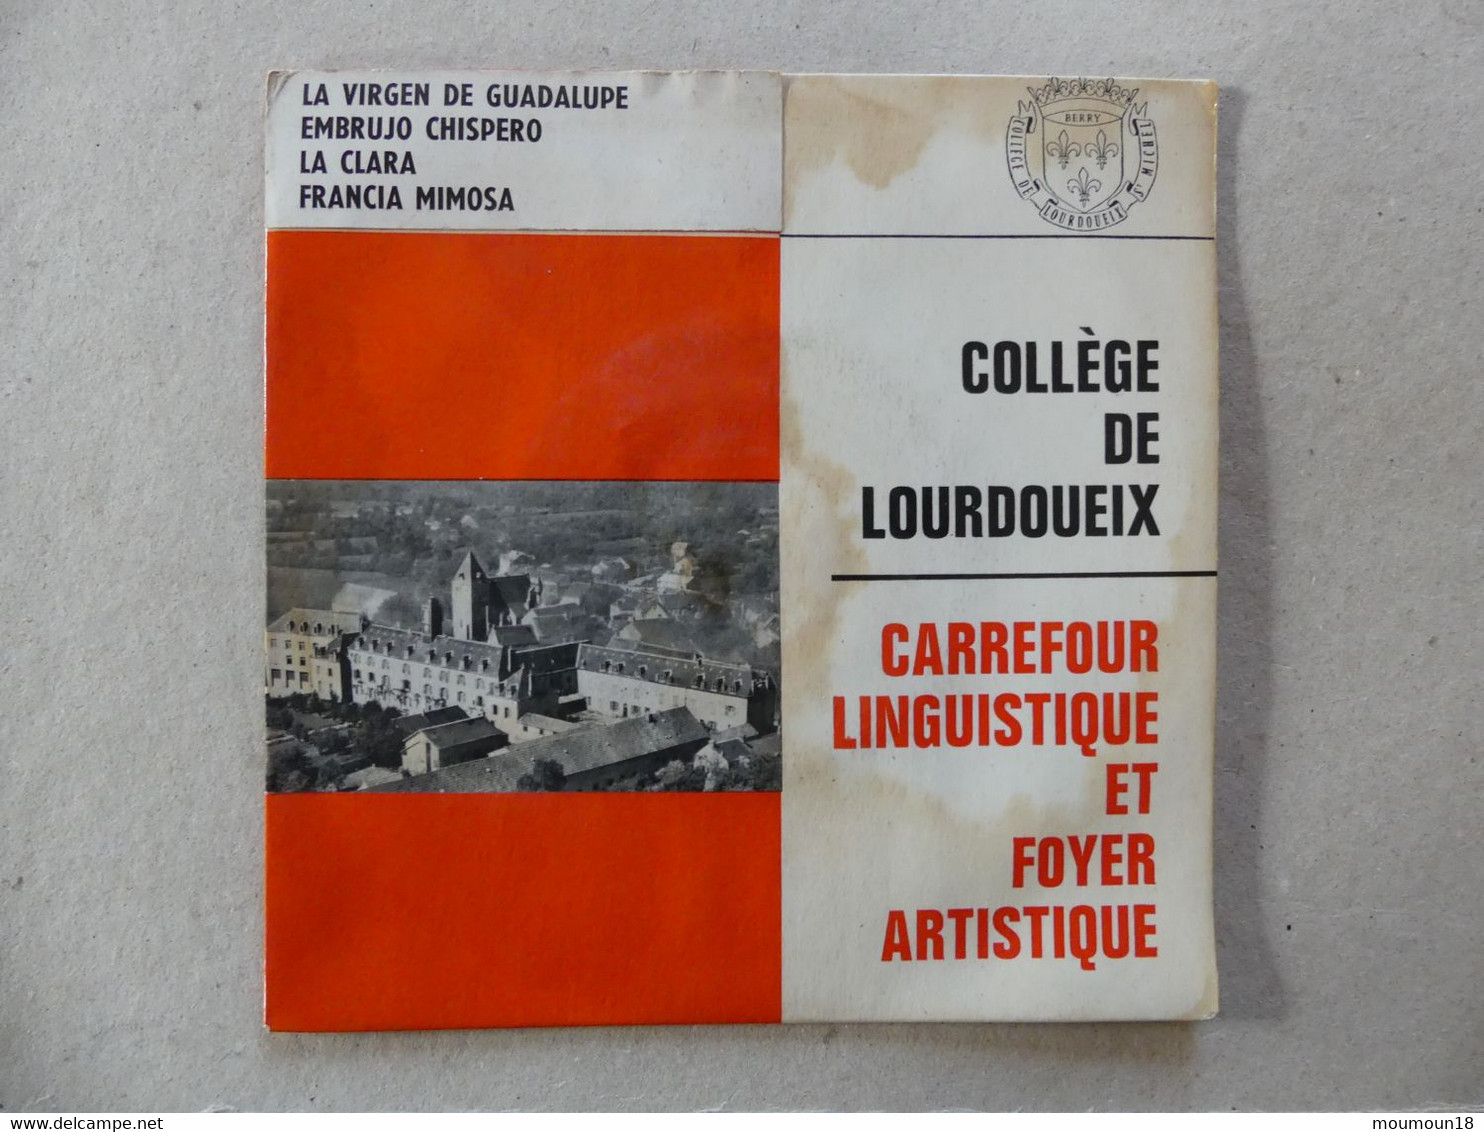 45 T College De Lourdoueix Carrefour Linguistique Et Foyer Artistique Matilla Ramos - Sonstige - Spanische Musik